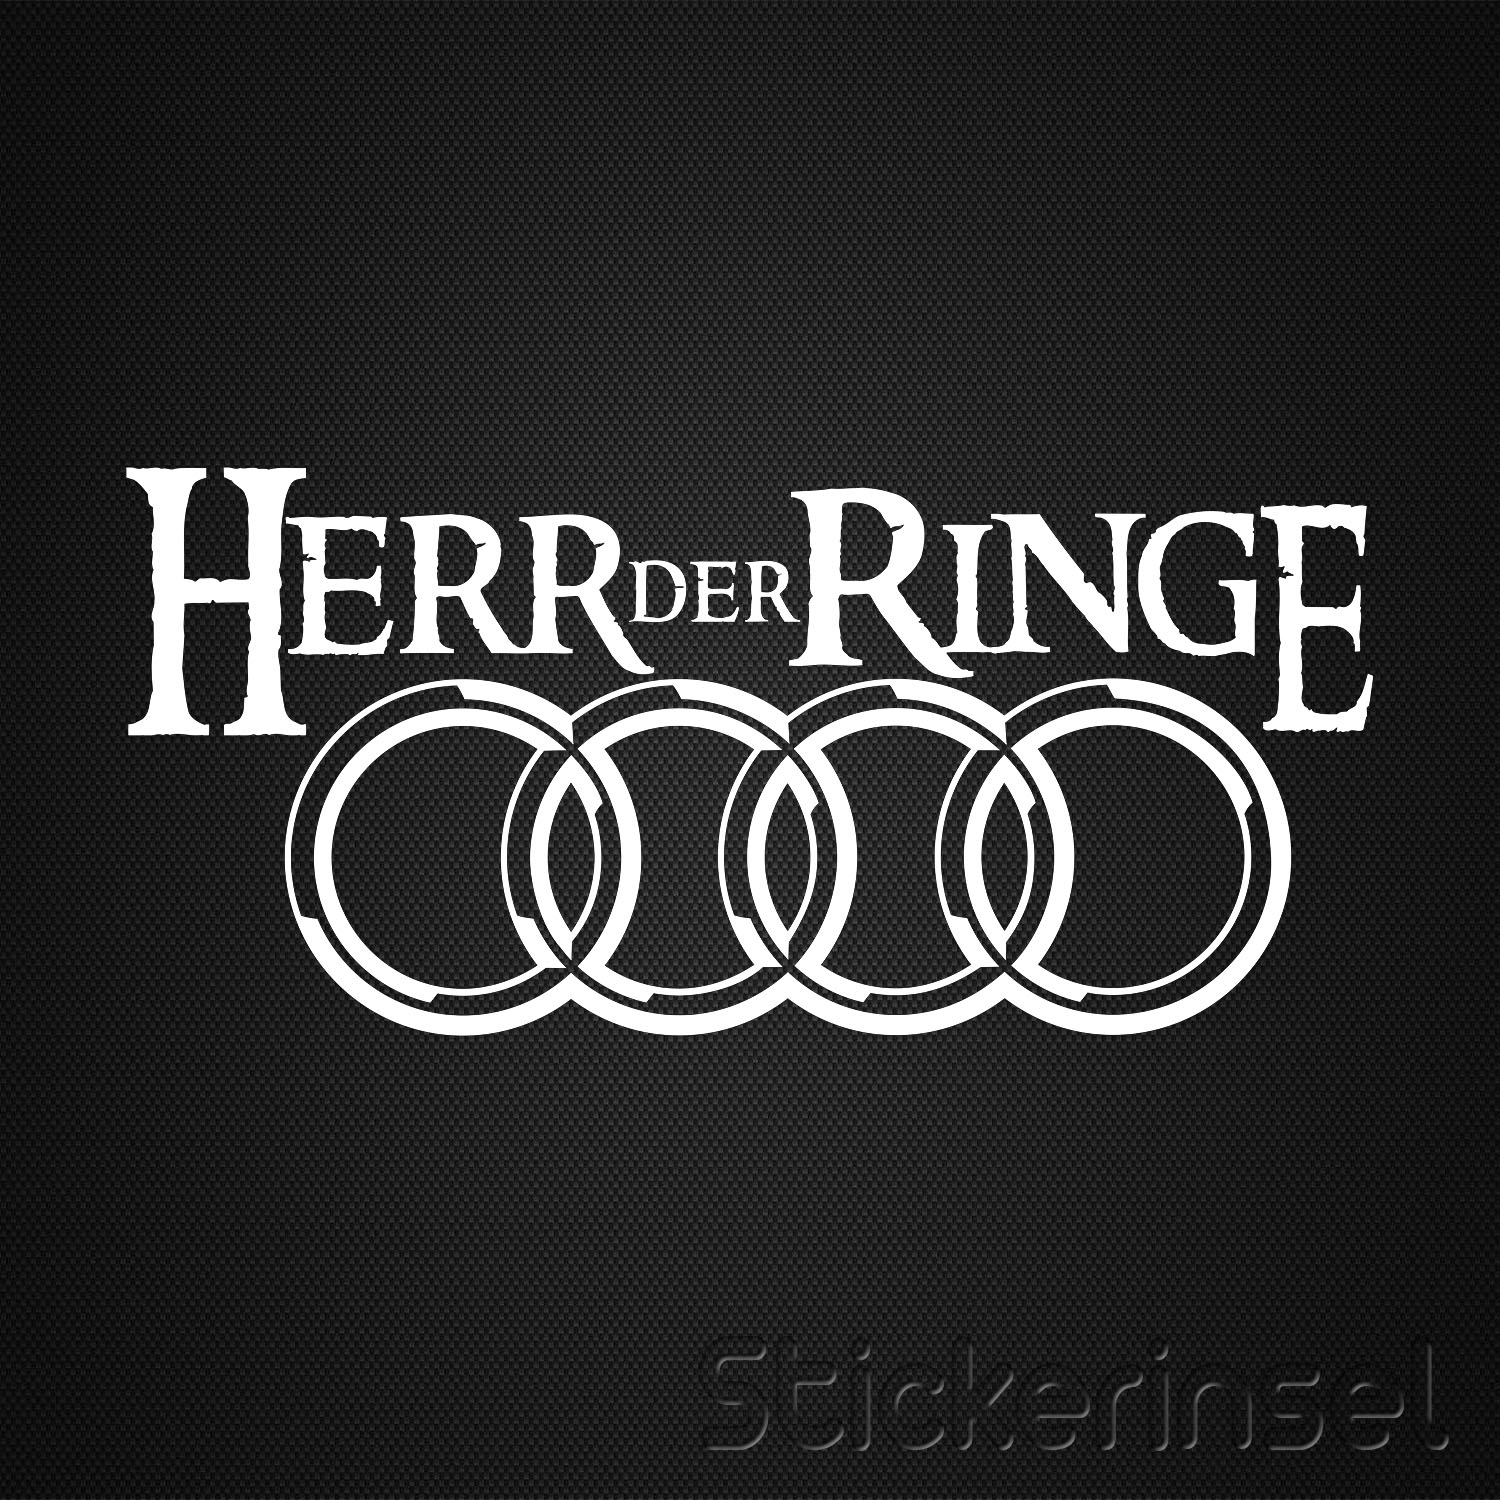 Audi Herr der Ringe » Stickerinsel - Autoaufkleber und Fahrzeugbeschriftung